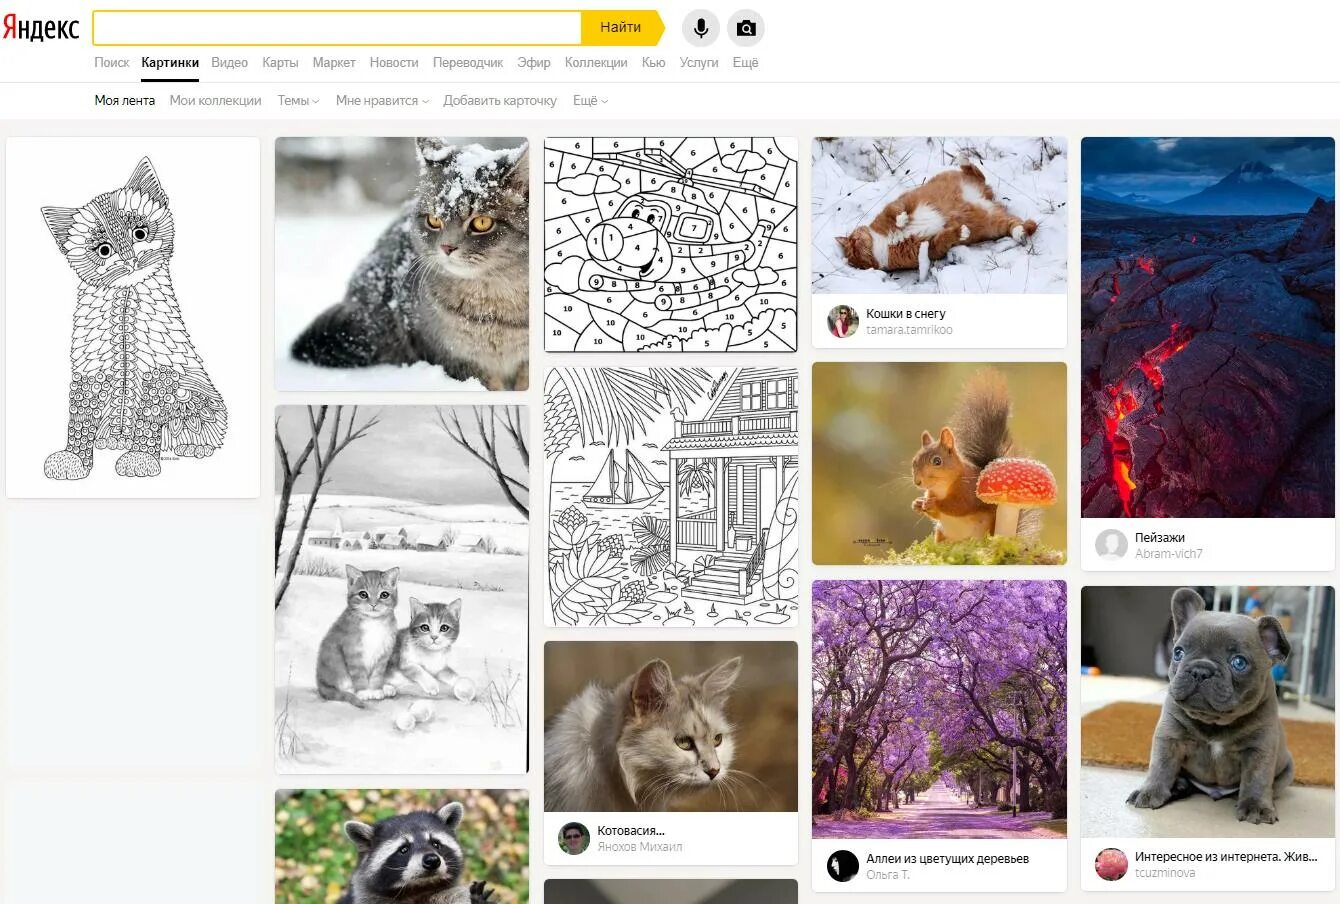 Искать картинку по картинке в Яндексе. Как можно найти картинку